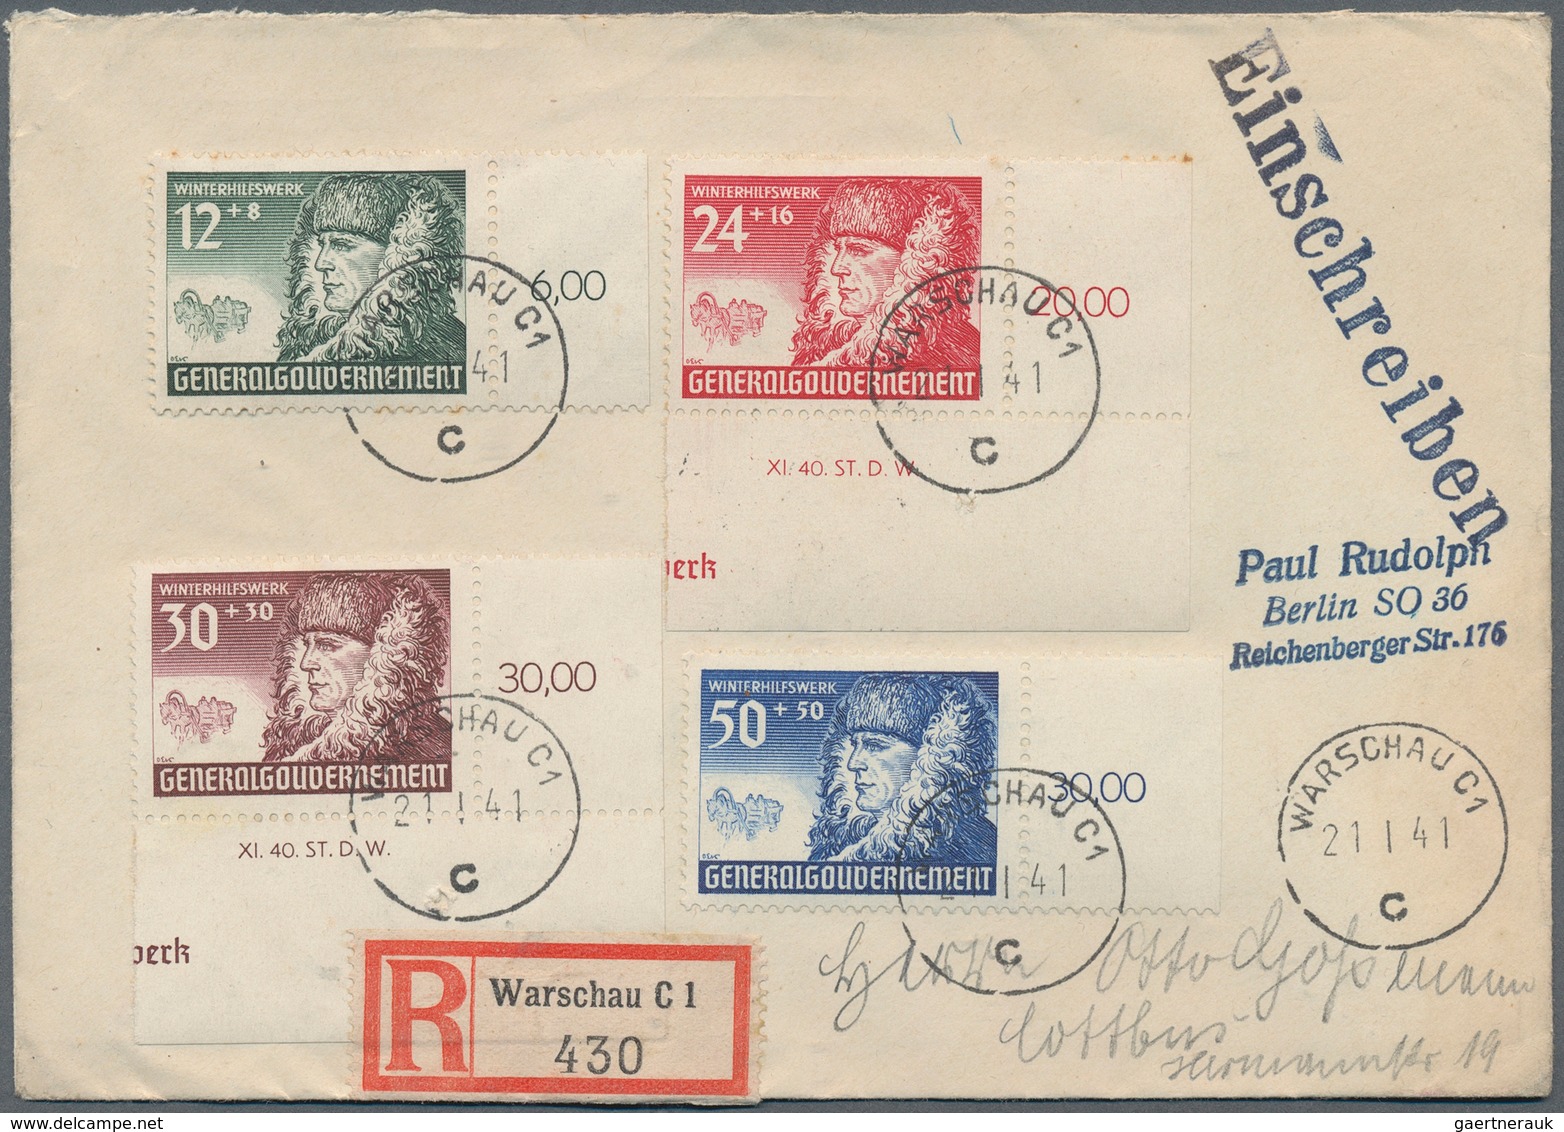 31007 Deutschland: 1850/1960 (ca.), vielseitiger Bestand von ca. 530 Briefen, Karten und Ganzsachen, dabei